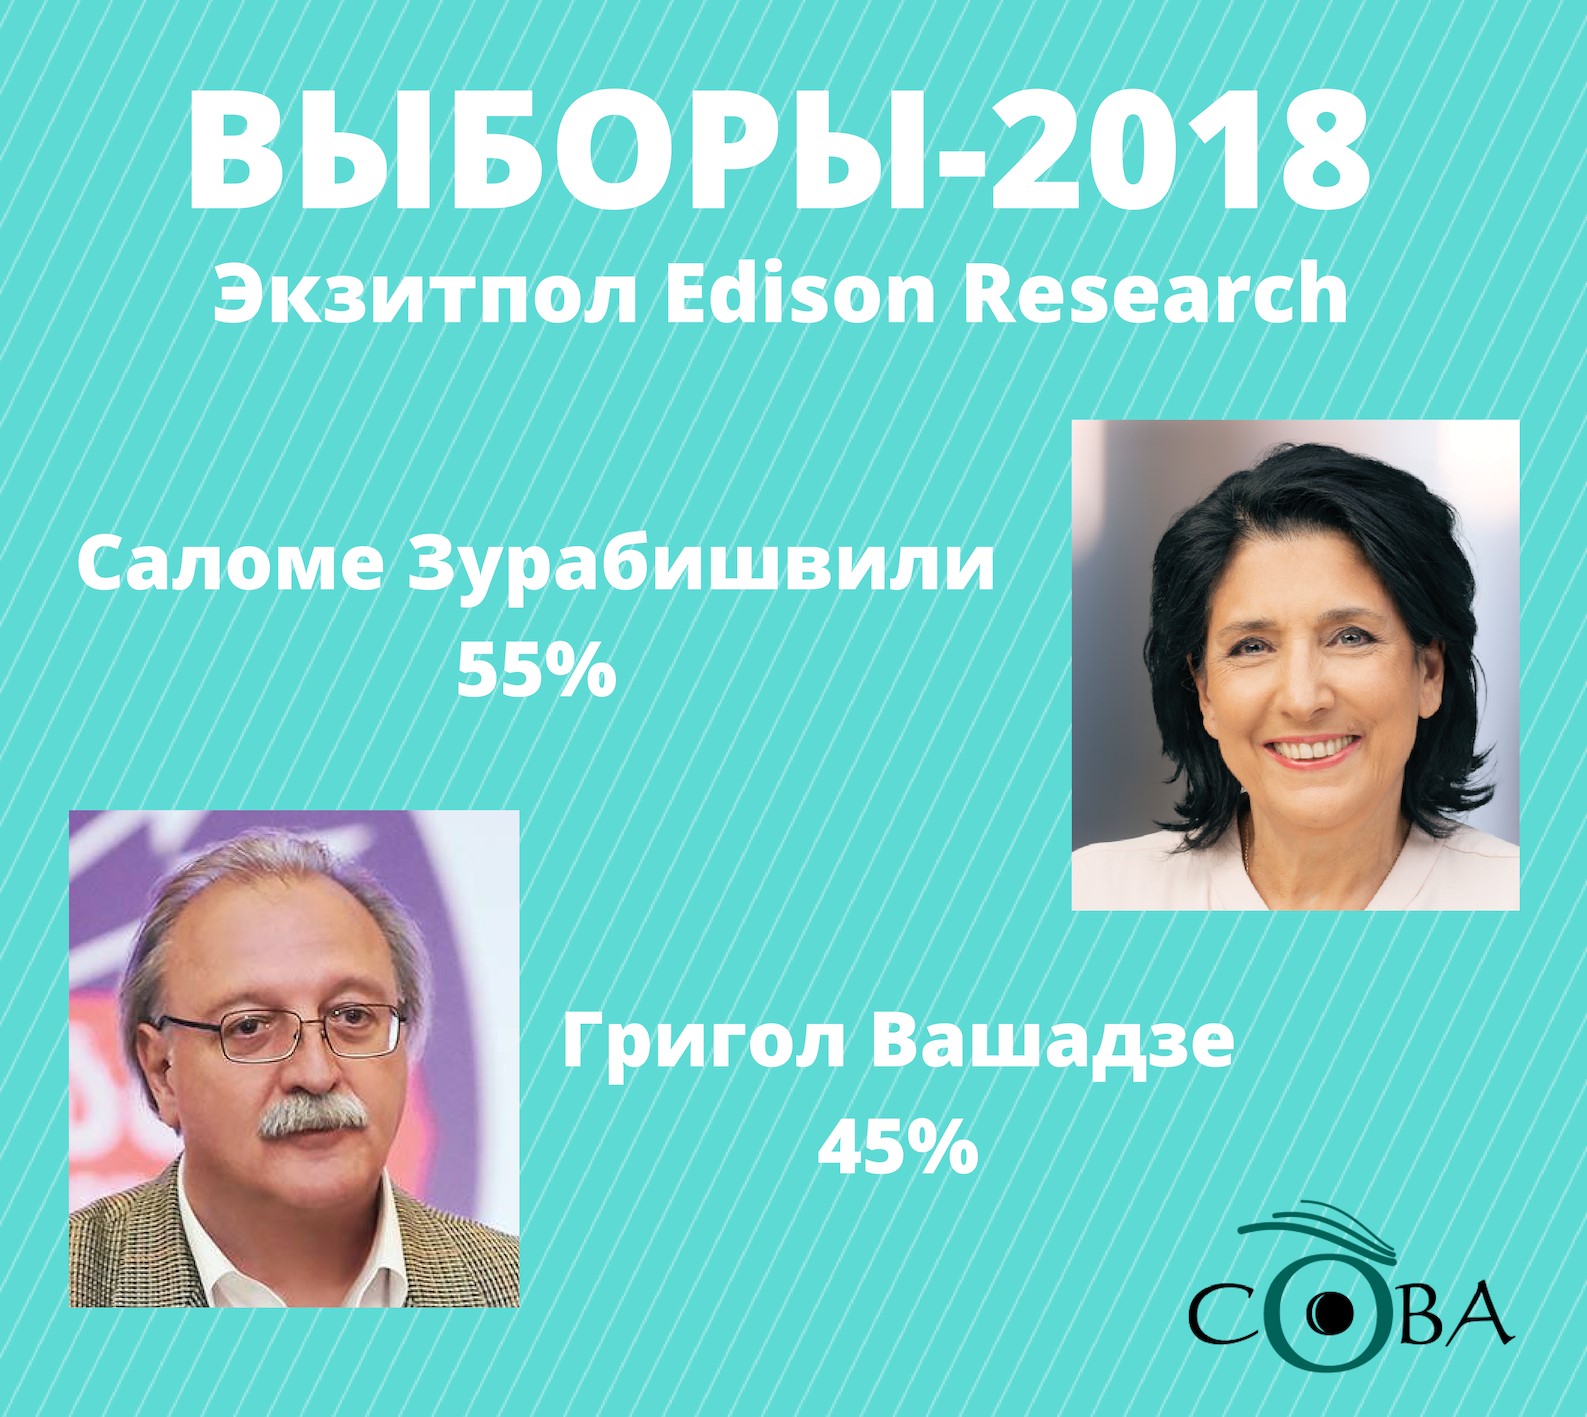 Edison Research 2 новости Edison Research, второй тур, выборы 2018, Григол Вашадзе, Грузия, президентские выборы, Саломе Зурабишвили, экзитпол